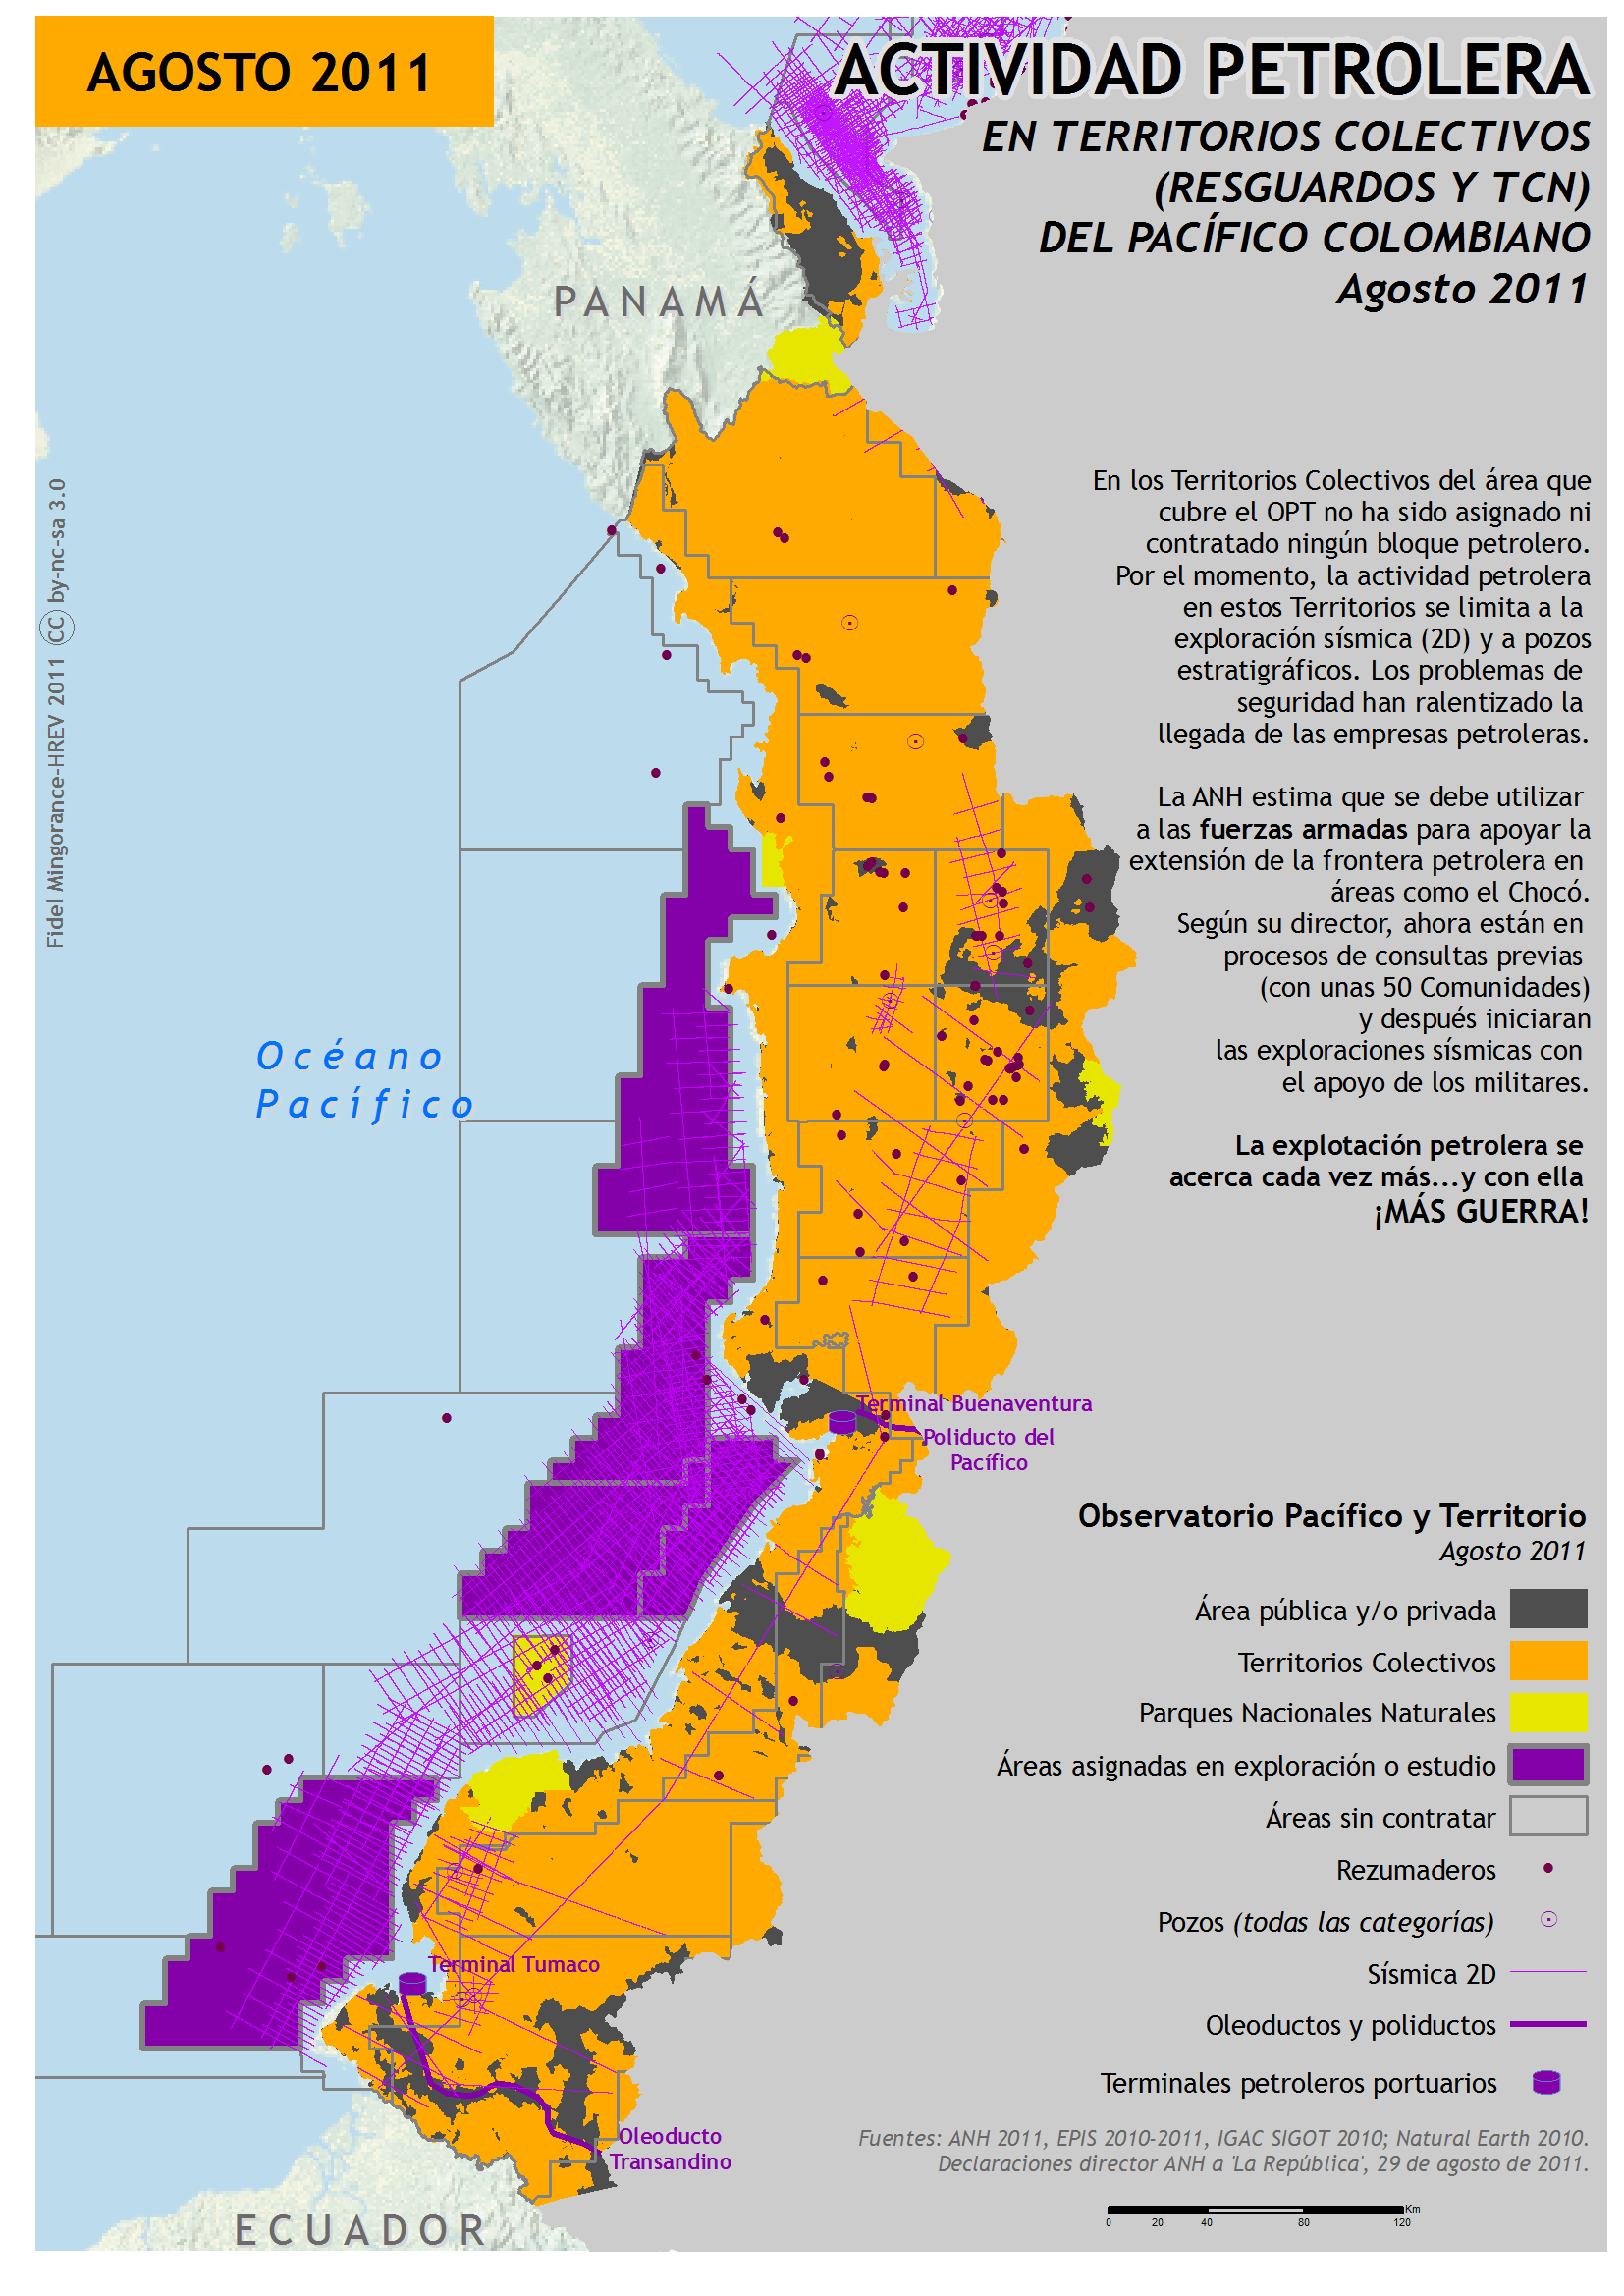 Actividad petrolera en el Pacífico colombiano (2011)